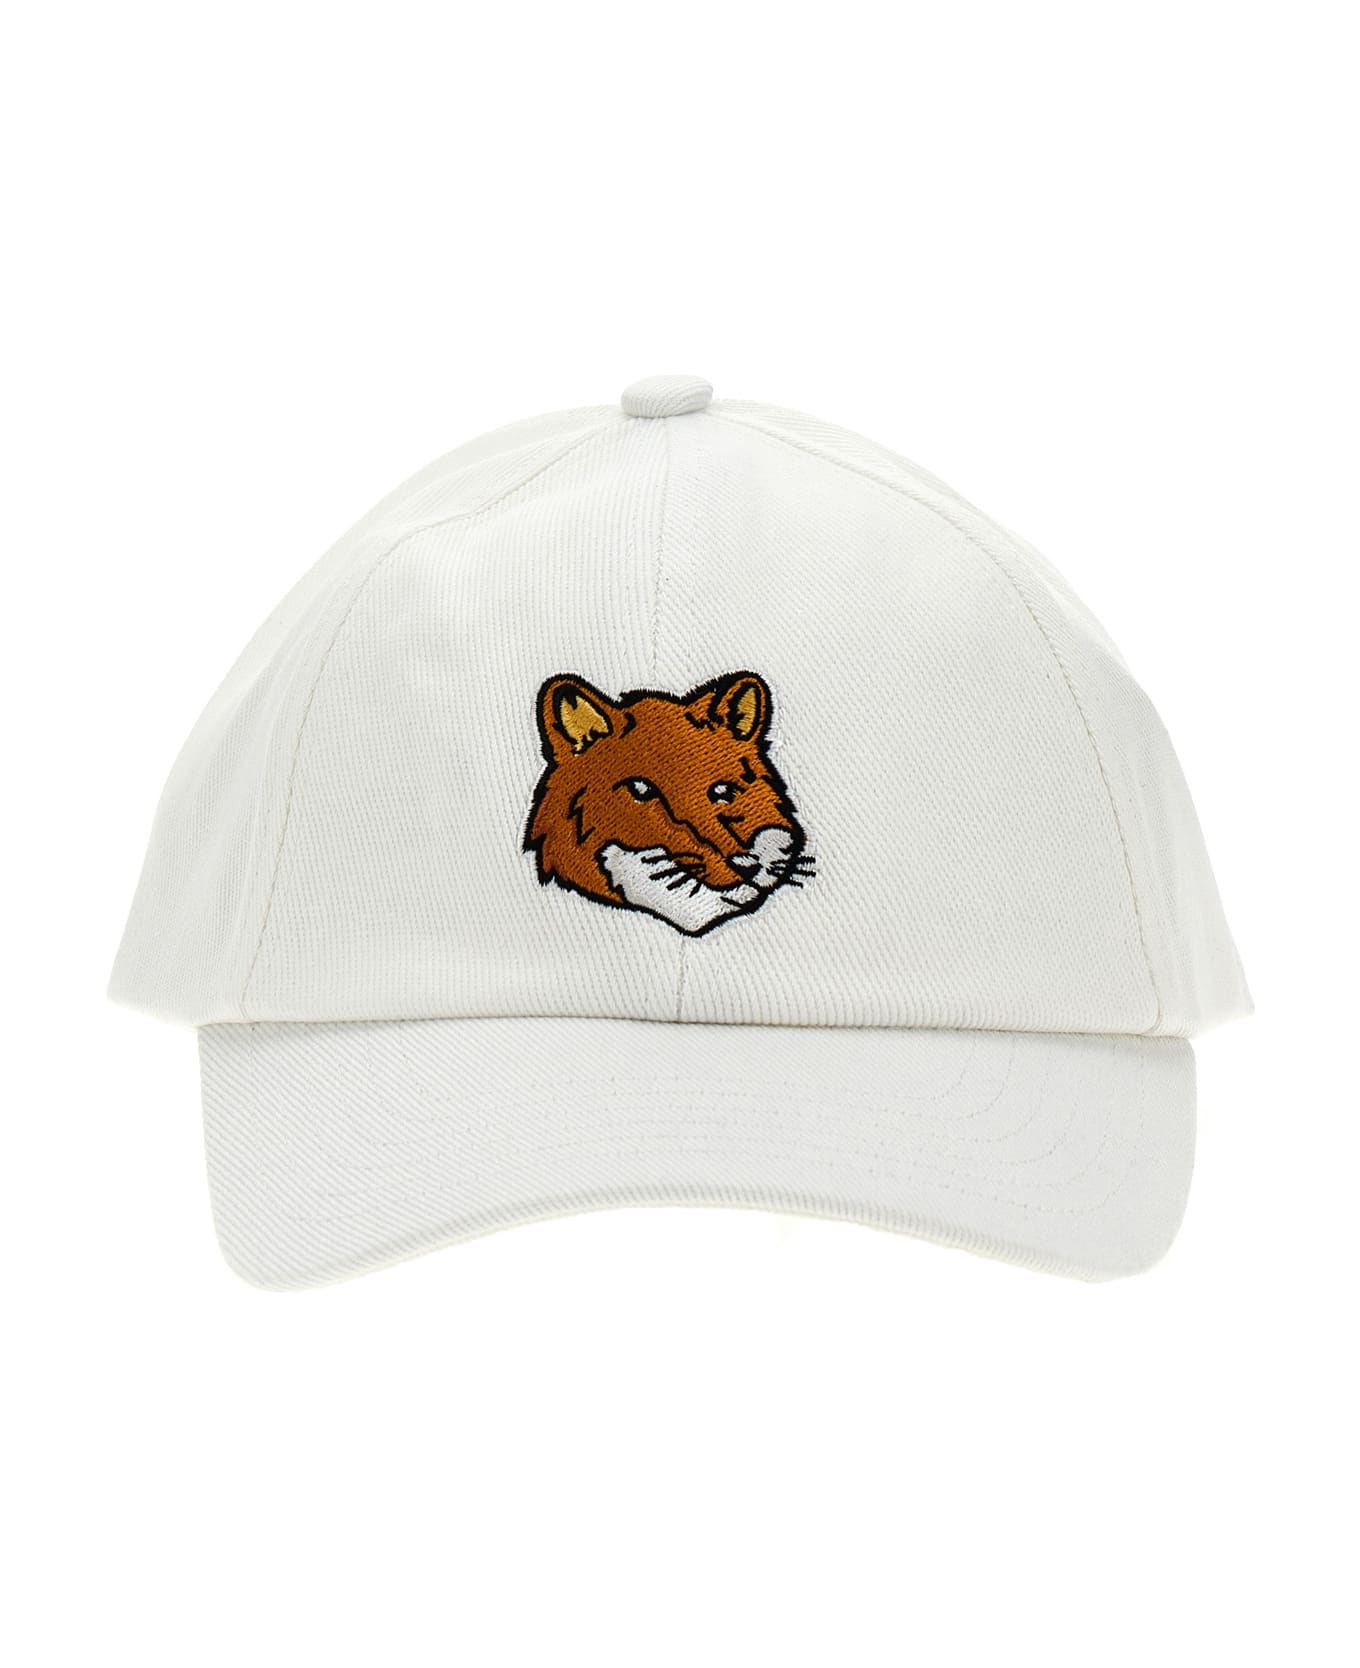 Maison Kitsuné 'fox Head' Cap - White 帽子